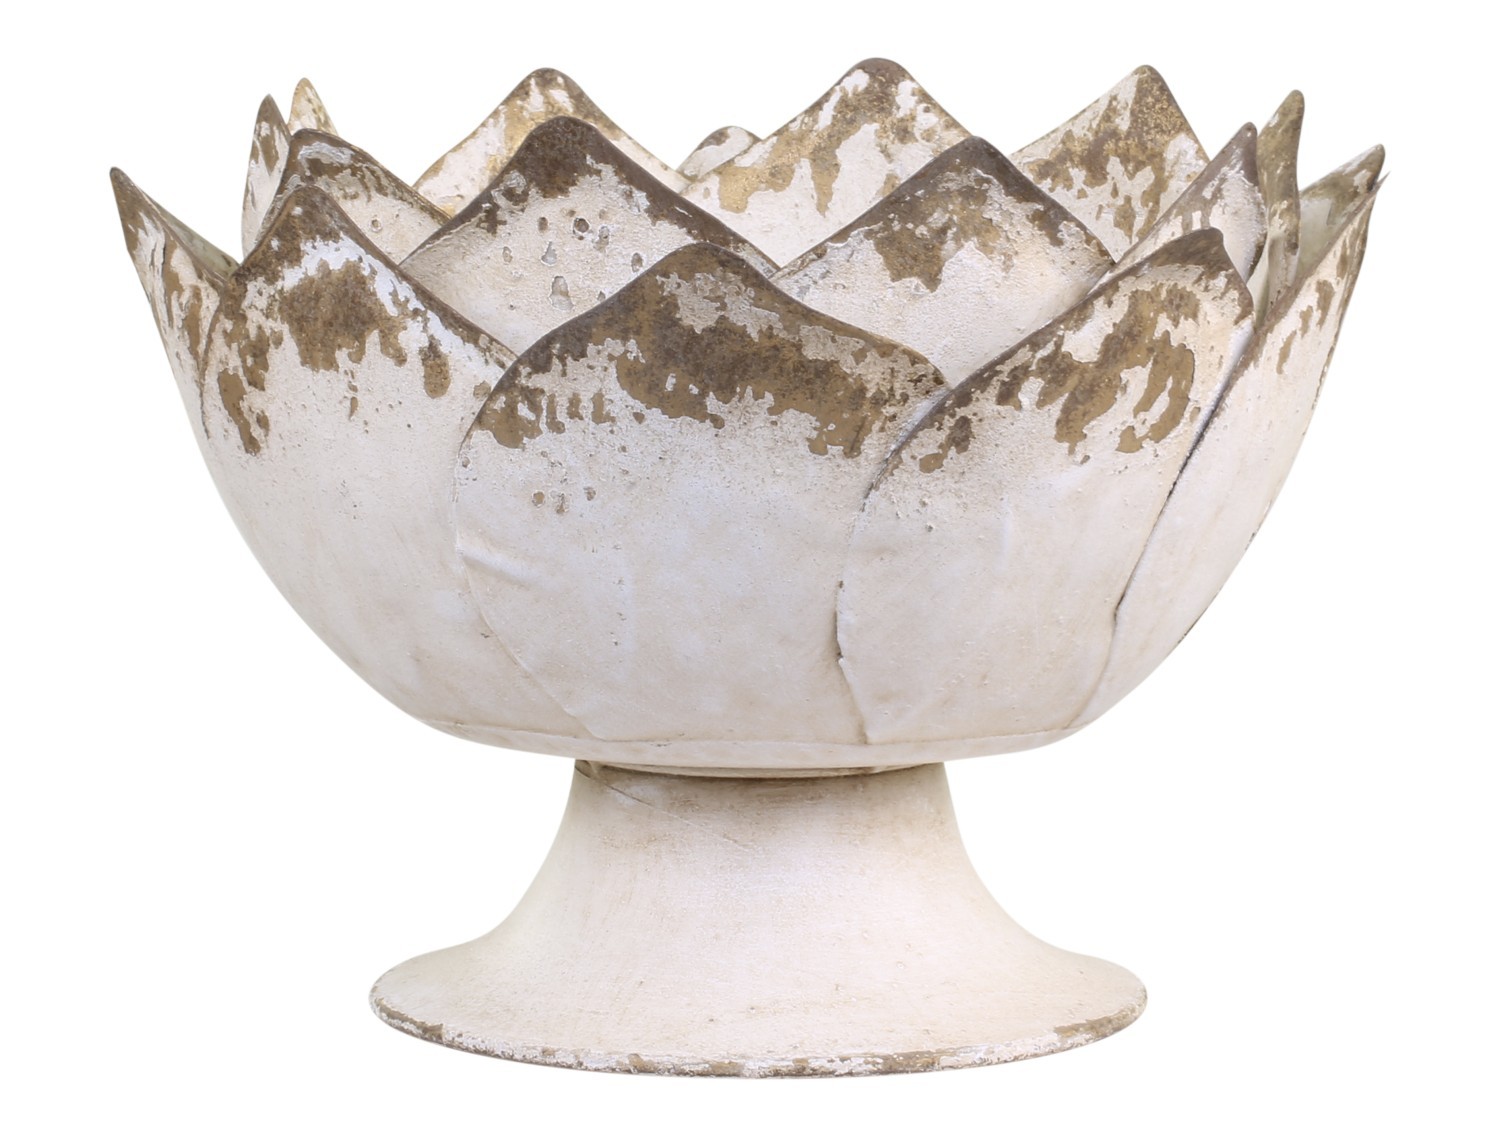 Béžová antik kovová dekorační mísa/ květináč na noze - Ø 29*19cm 64062919 (64629-19)